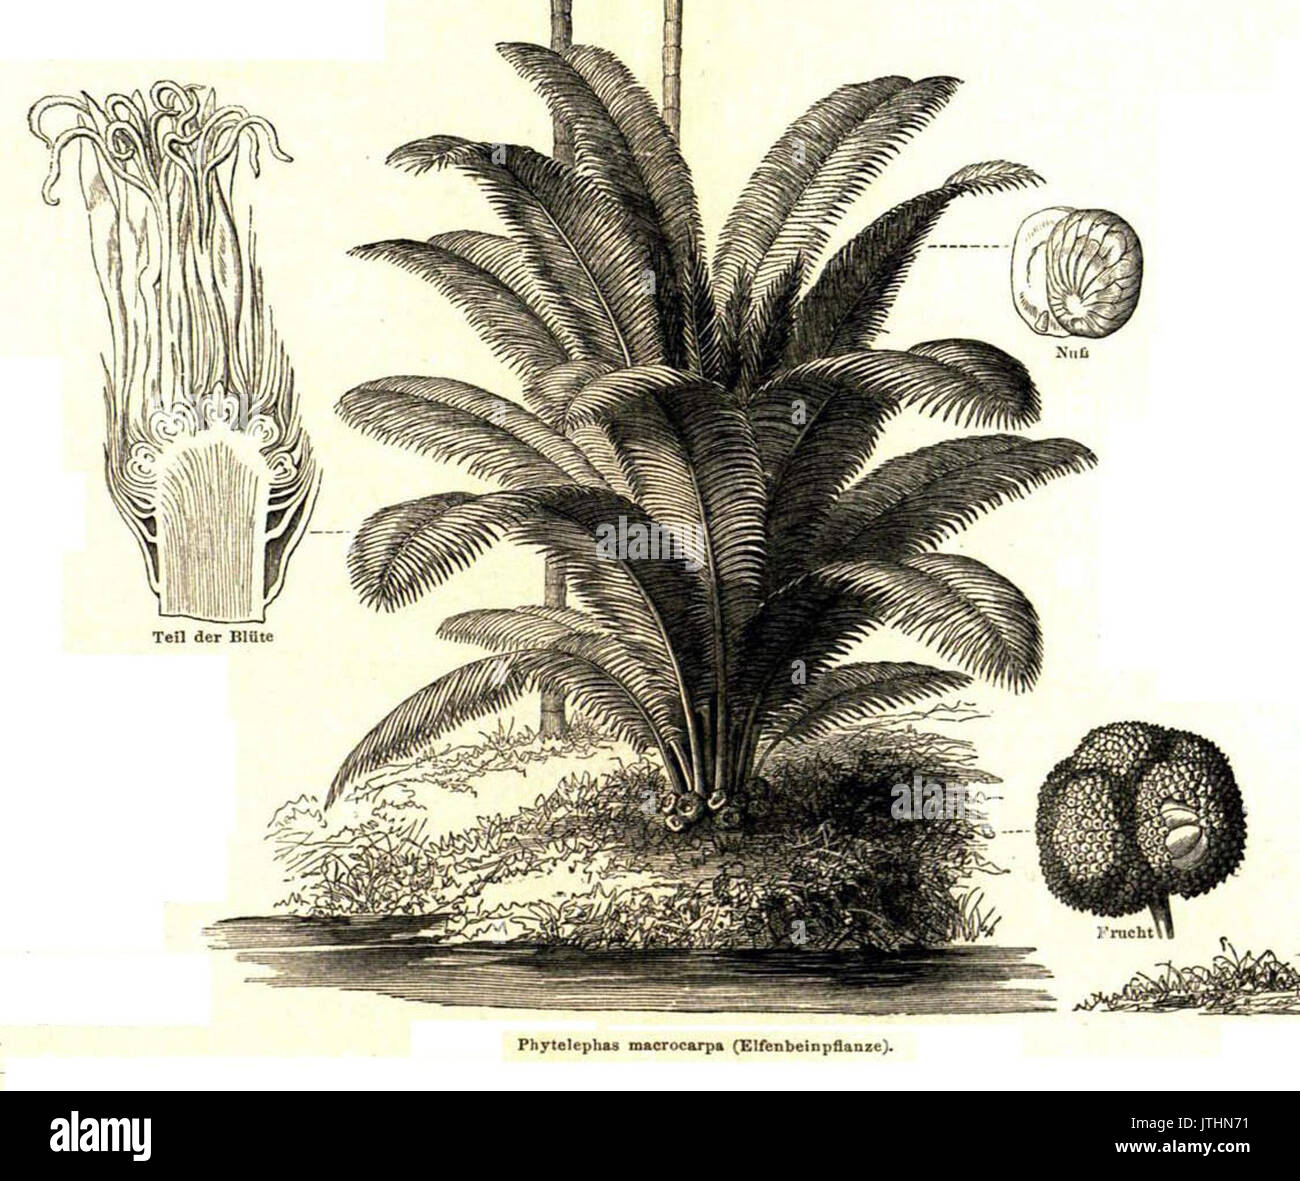 Phytelephas macrocarpa Industriepflanzen Meyer 1888 Stock Photo - Alamy